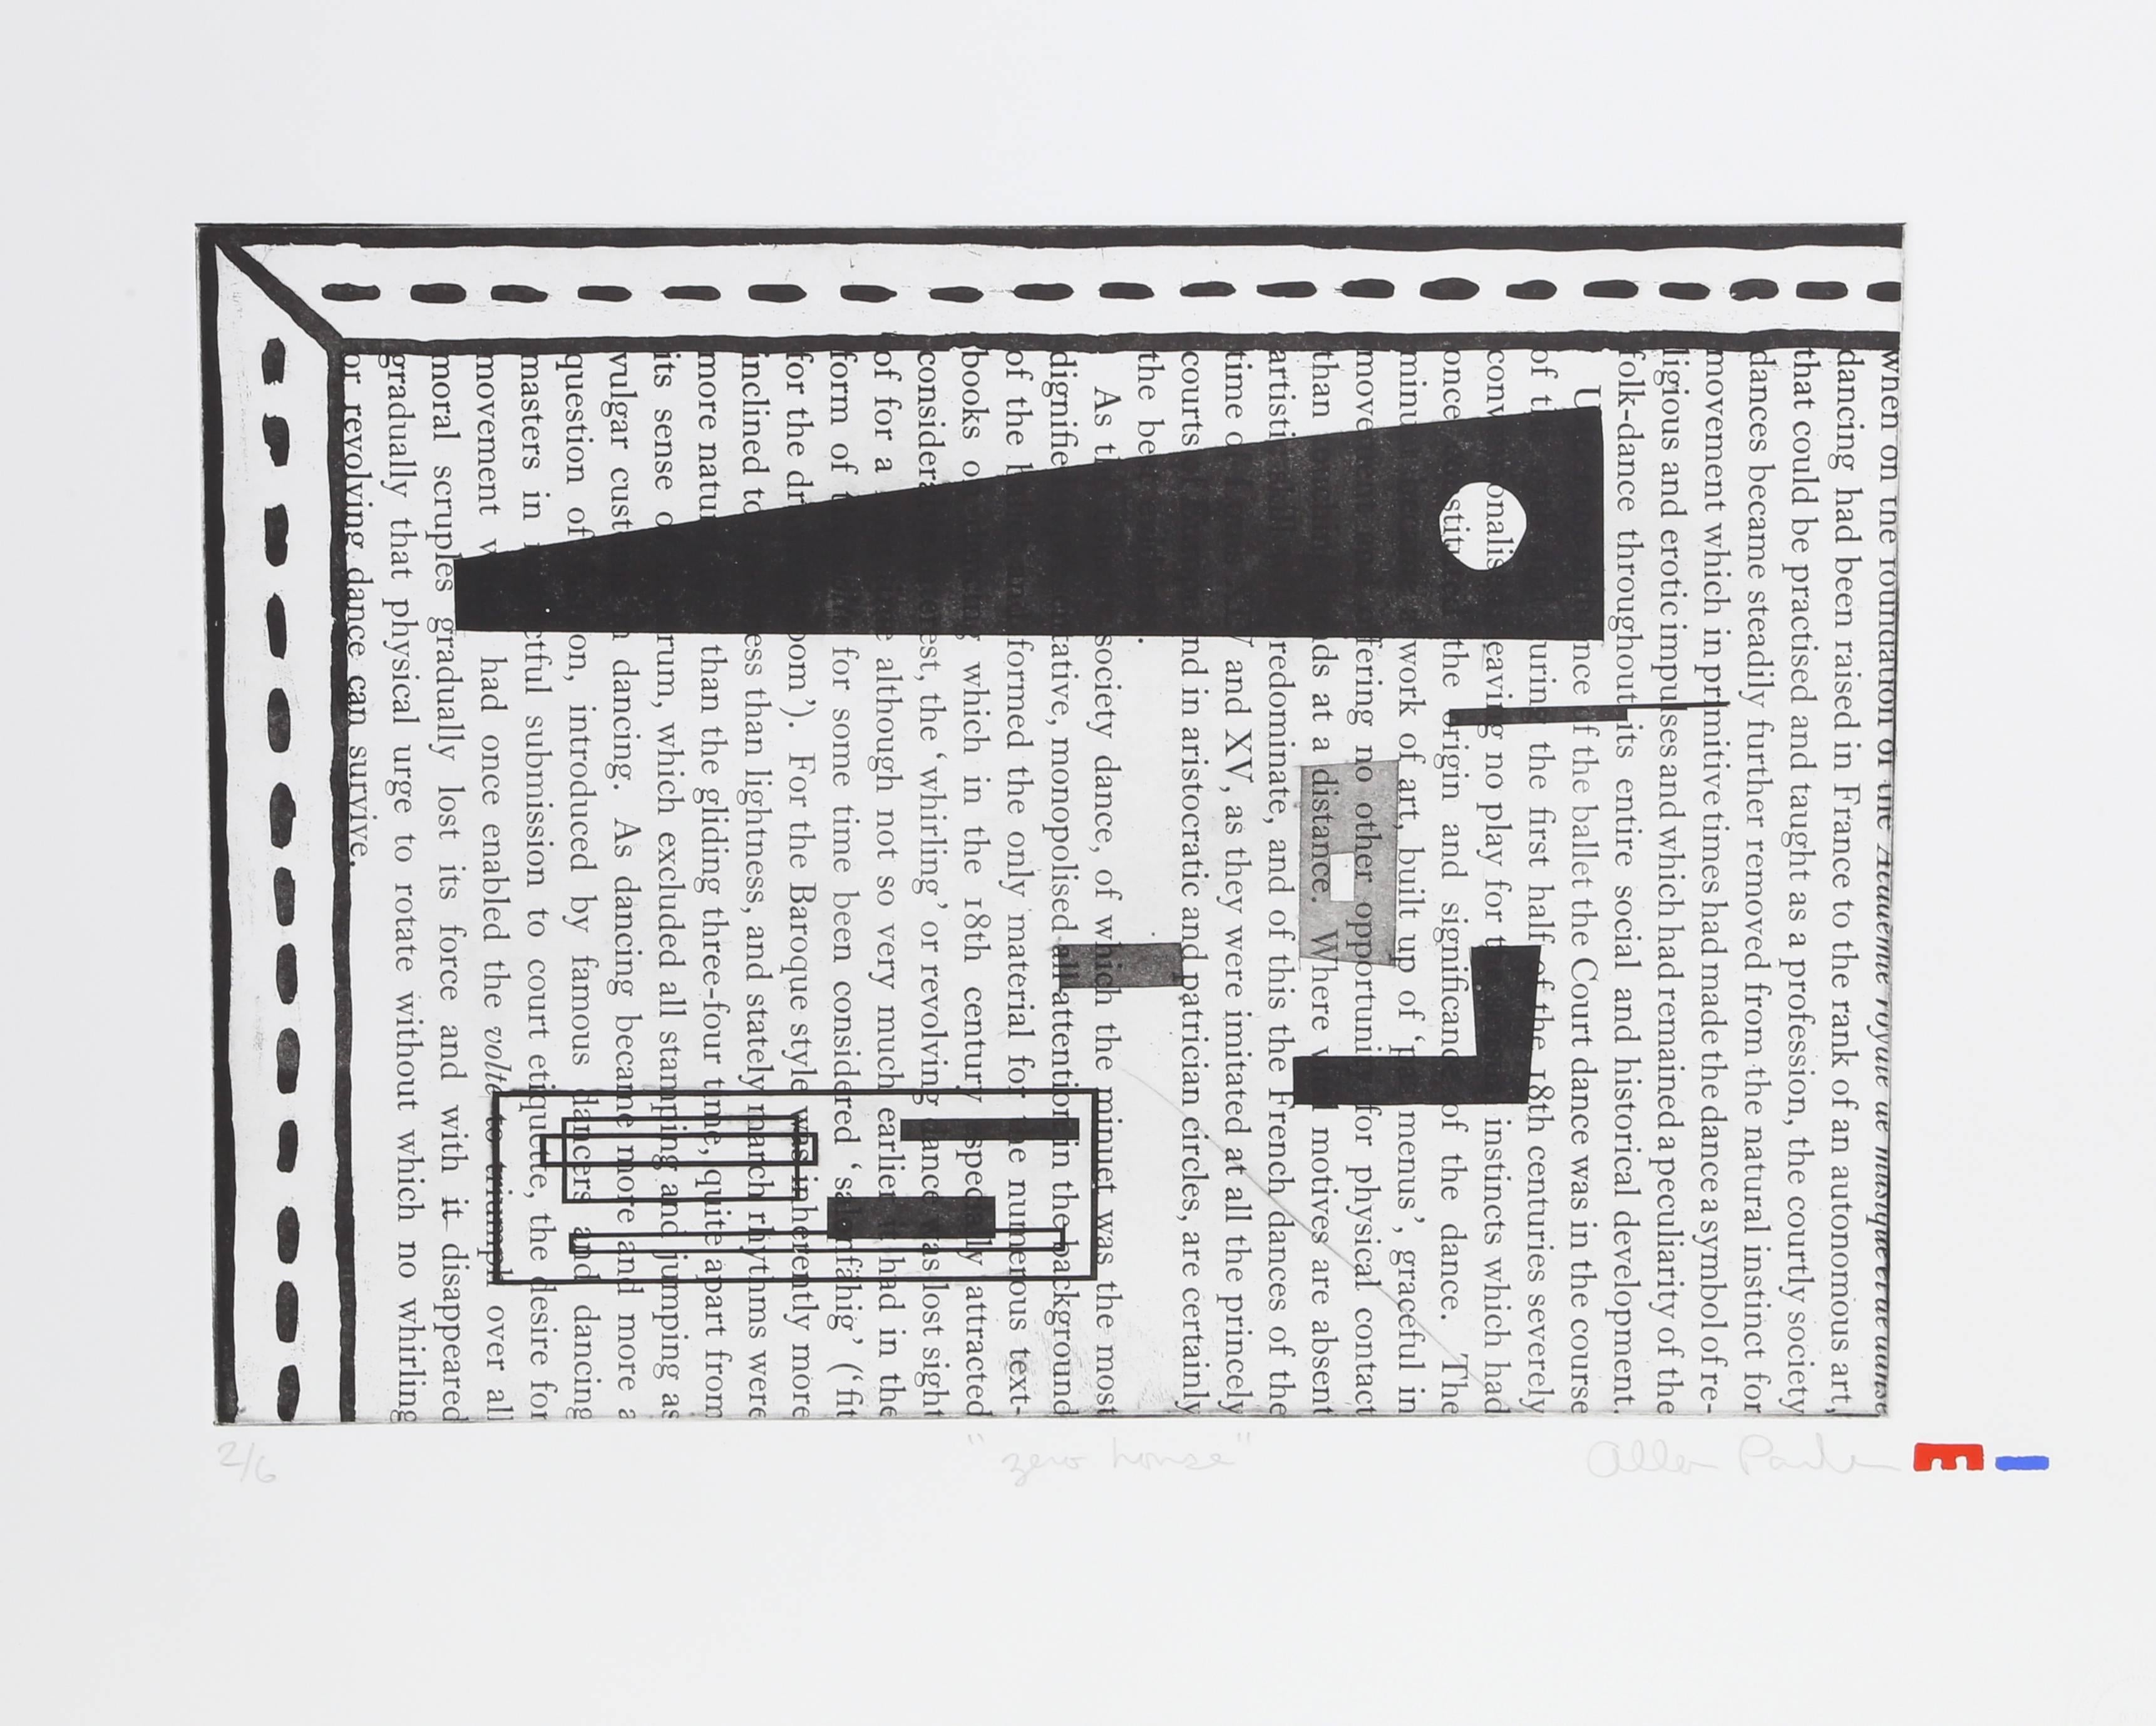 Künstler: Alan Parker, Kanadier
Titel: Nullhaus
Jahr: 1992
Medium: Radierung mit Aquatinta, mit Bleistift signiert und nummeriert
Bildgröße: 12,5 x 17,5 Zoll
Größe: 22  x 29.5 in. (55.88  x 74.93 cm)